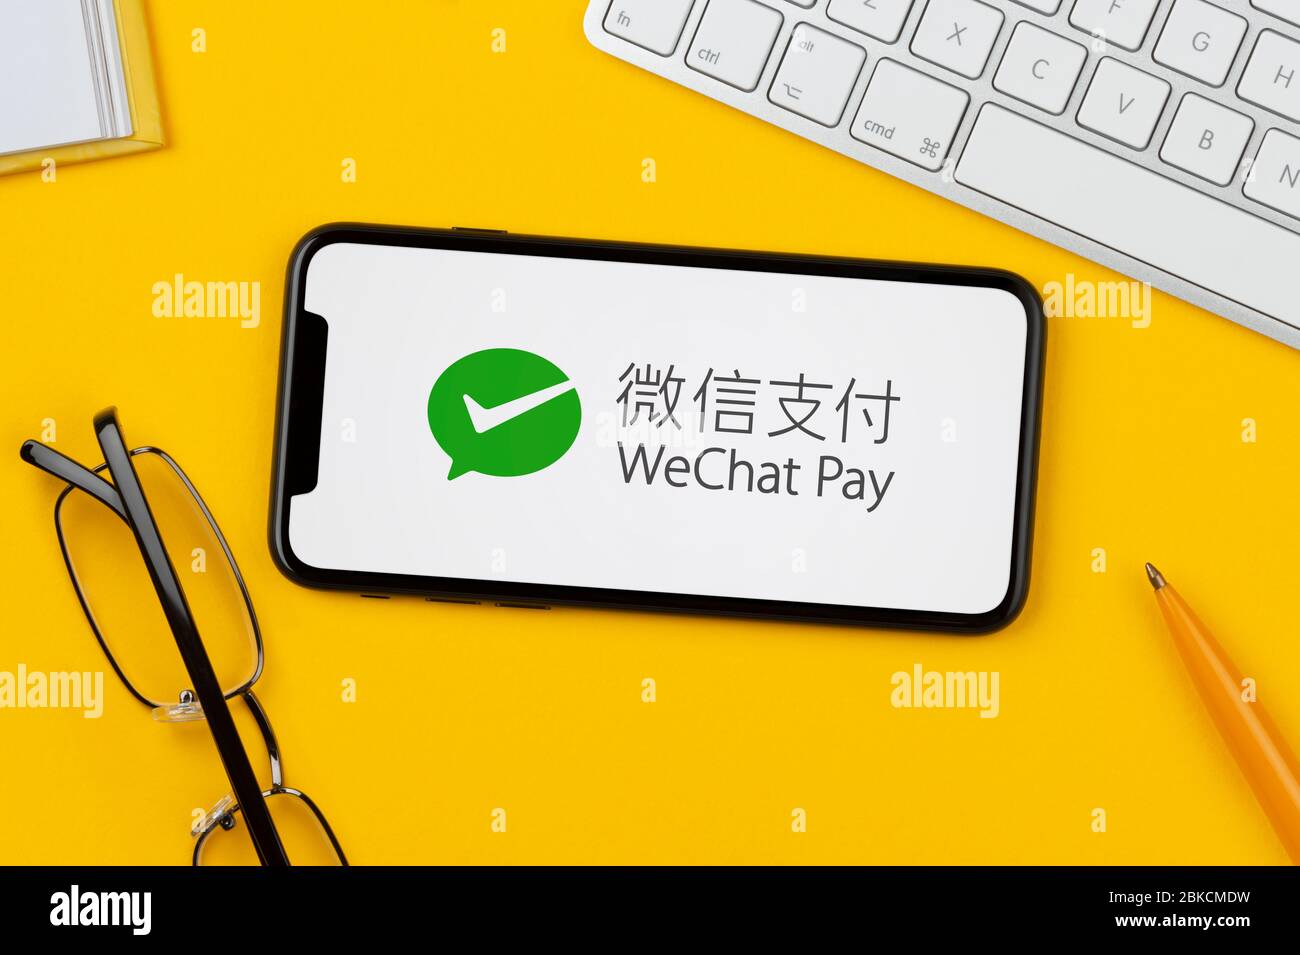 Un smartphone affichant le logo WeChat Pay repose sur un fond jaune avec un clavier, des lunettes, un stylo et un livre (usage éditorial uniquement). Banque D'Images